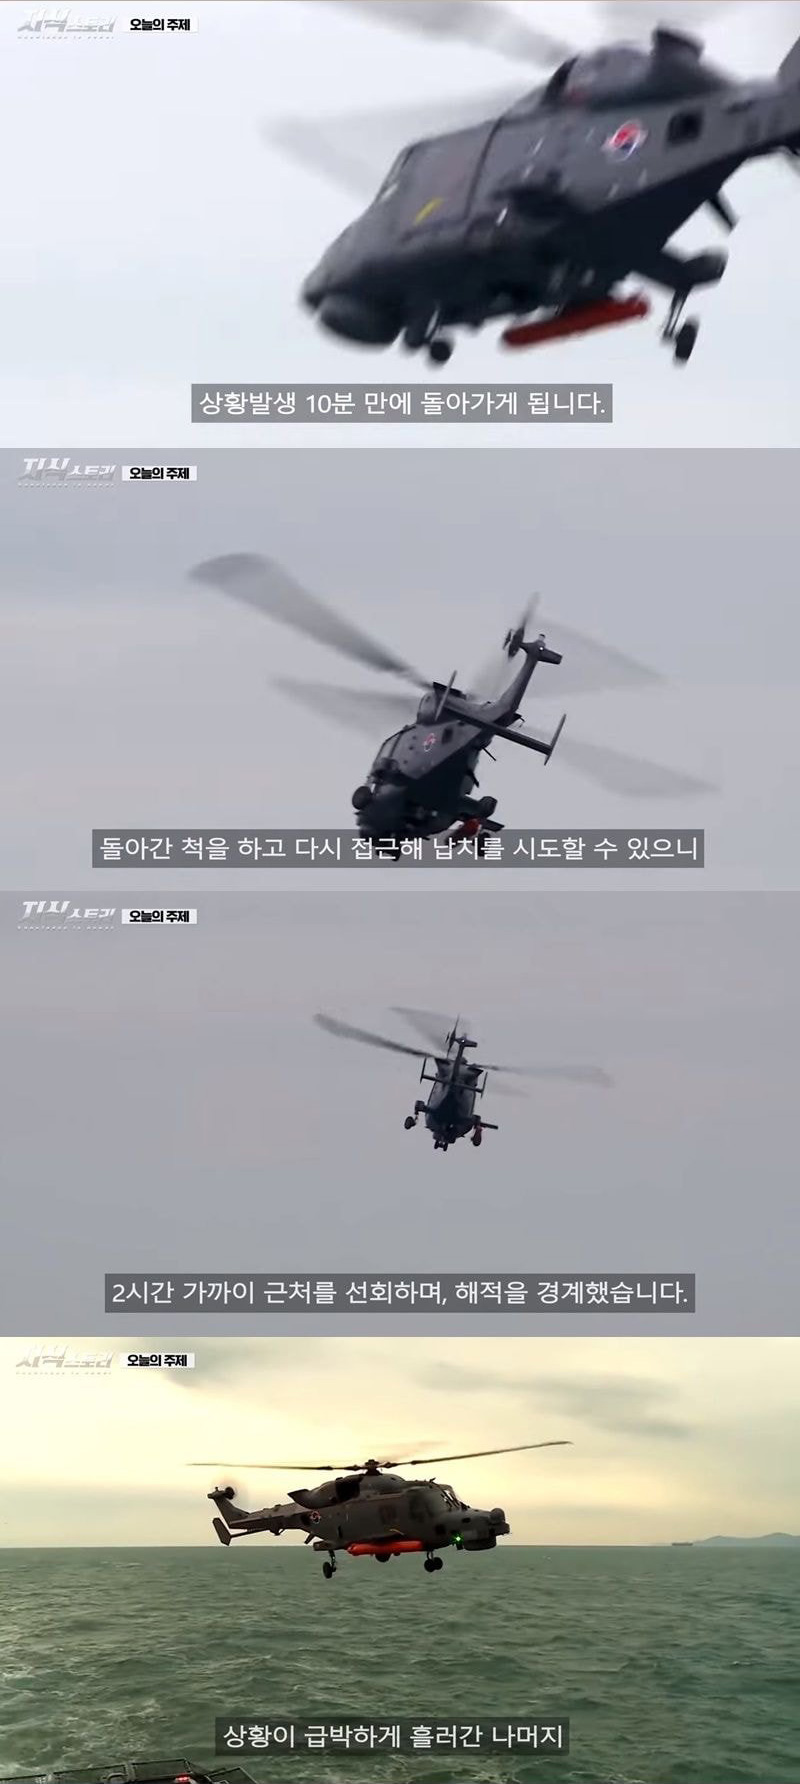 대한민국 청해부대가 북한상선을 구조했을 때 교신 내용 - 꾸르